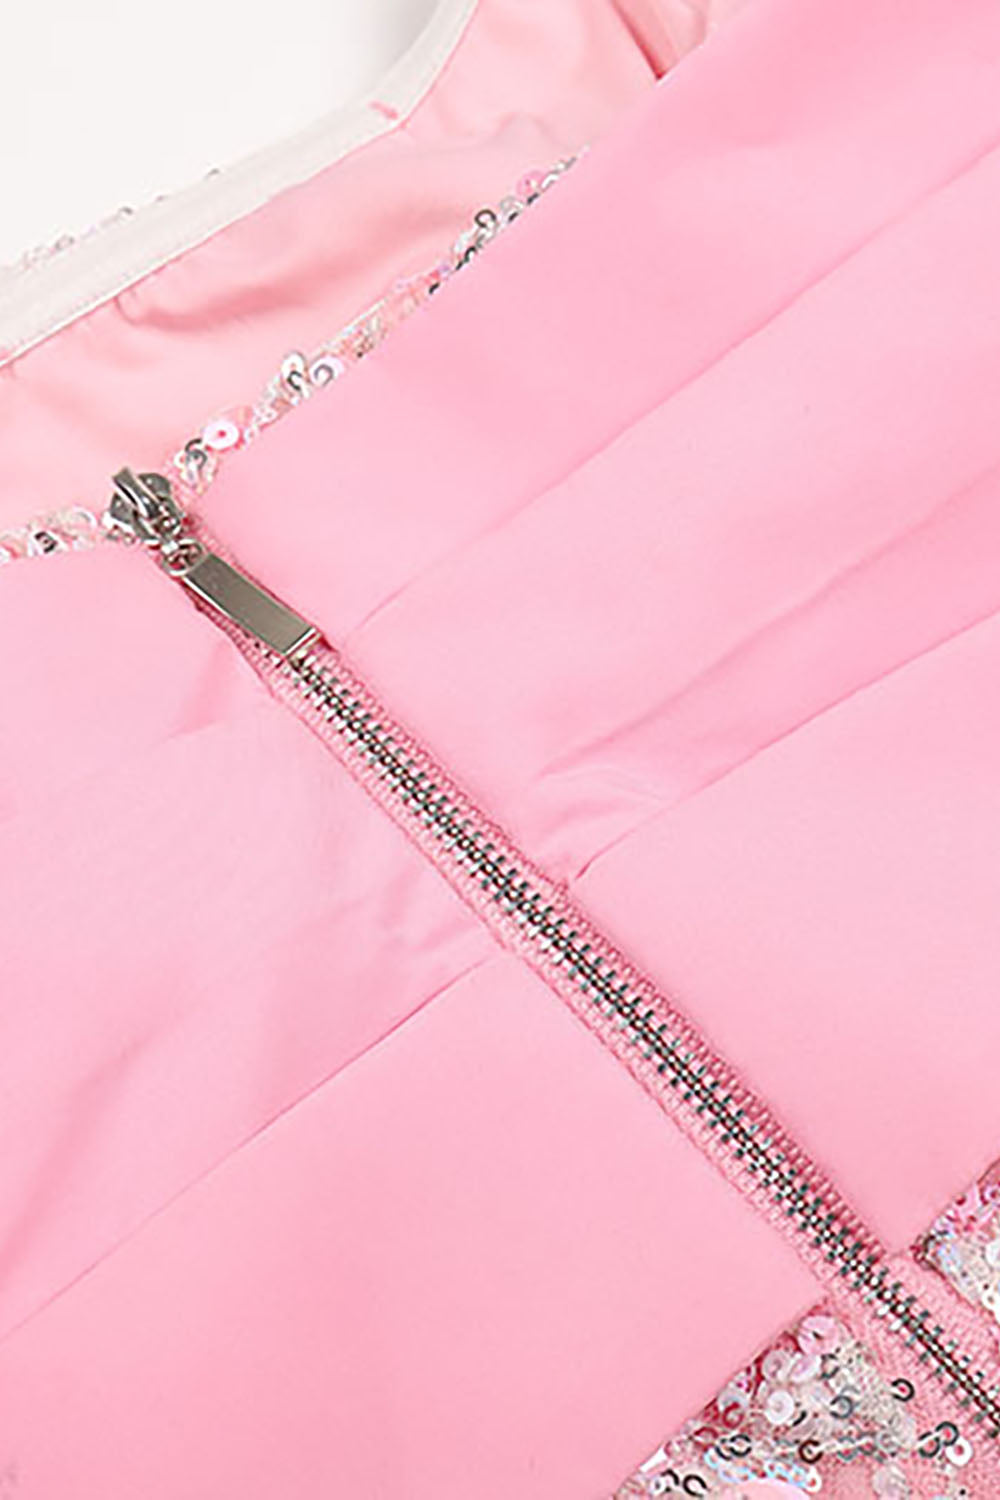 Pink Off Shoulder Sequin Bianca Dress